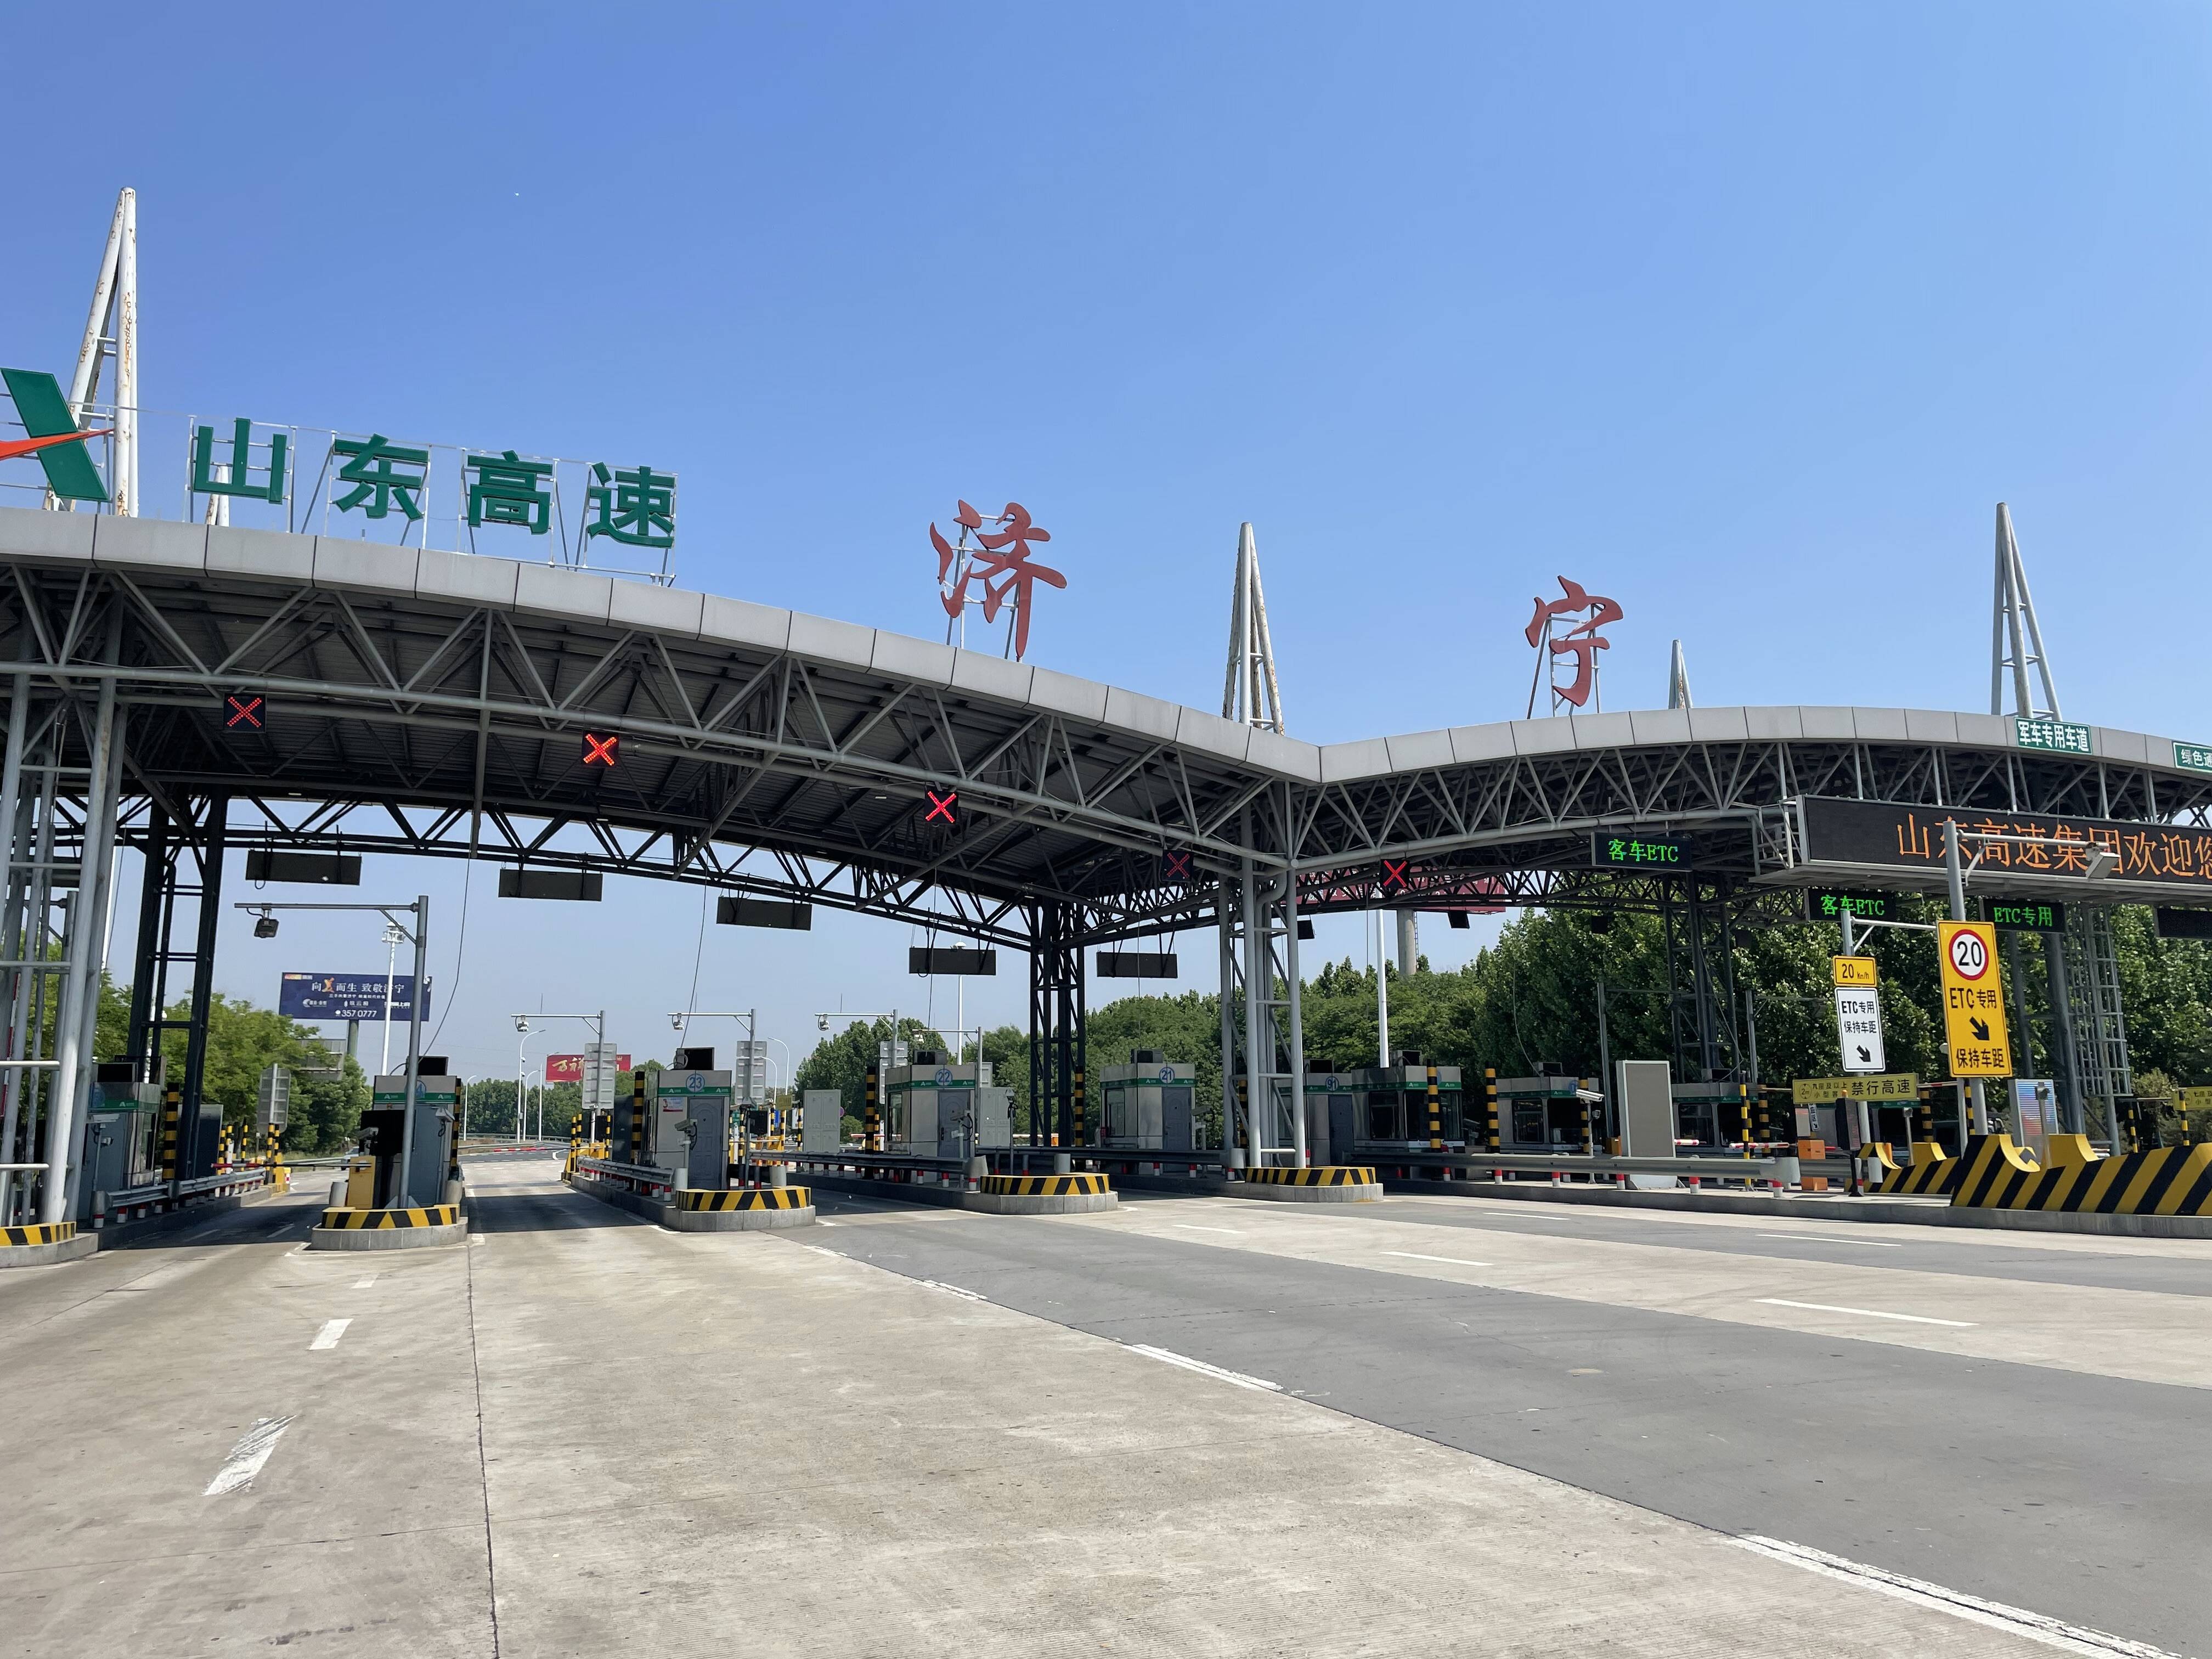 5月6日,在日兰高速济宁出口站记者看到,出口站外广场分别设置了4处